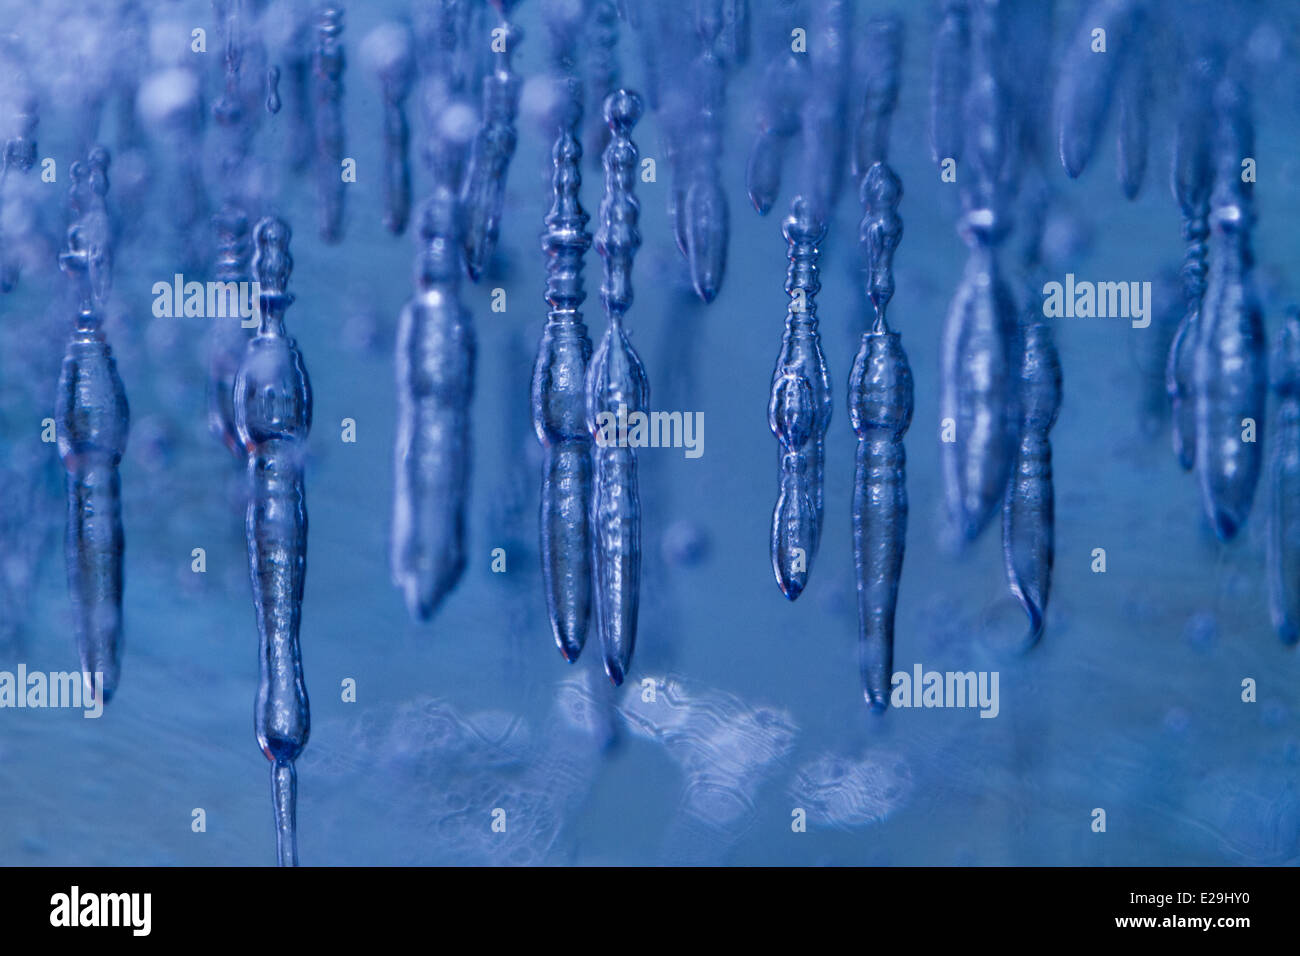 Cubo de hielo con burbujas de aire dentro de la macro fotografía, brillando a través de una luz LED azul Foto de stock